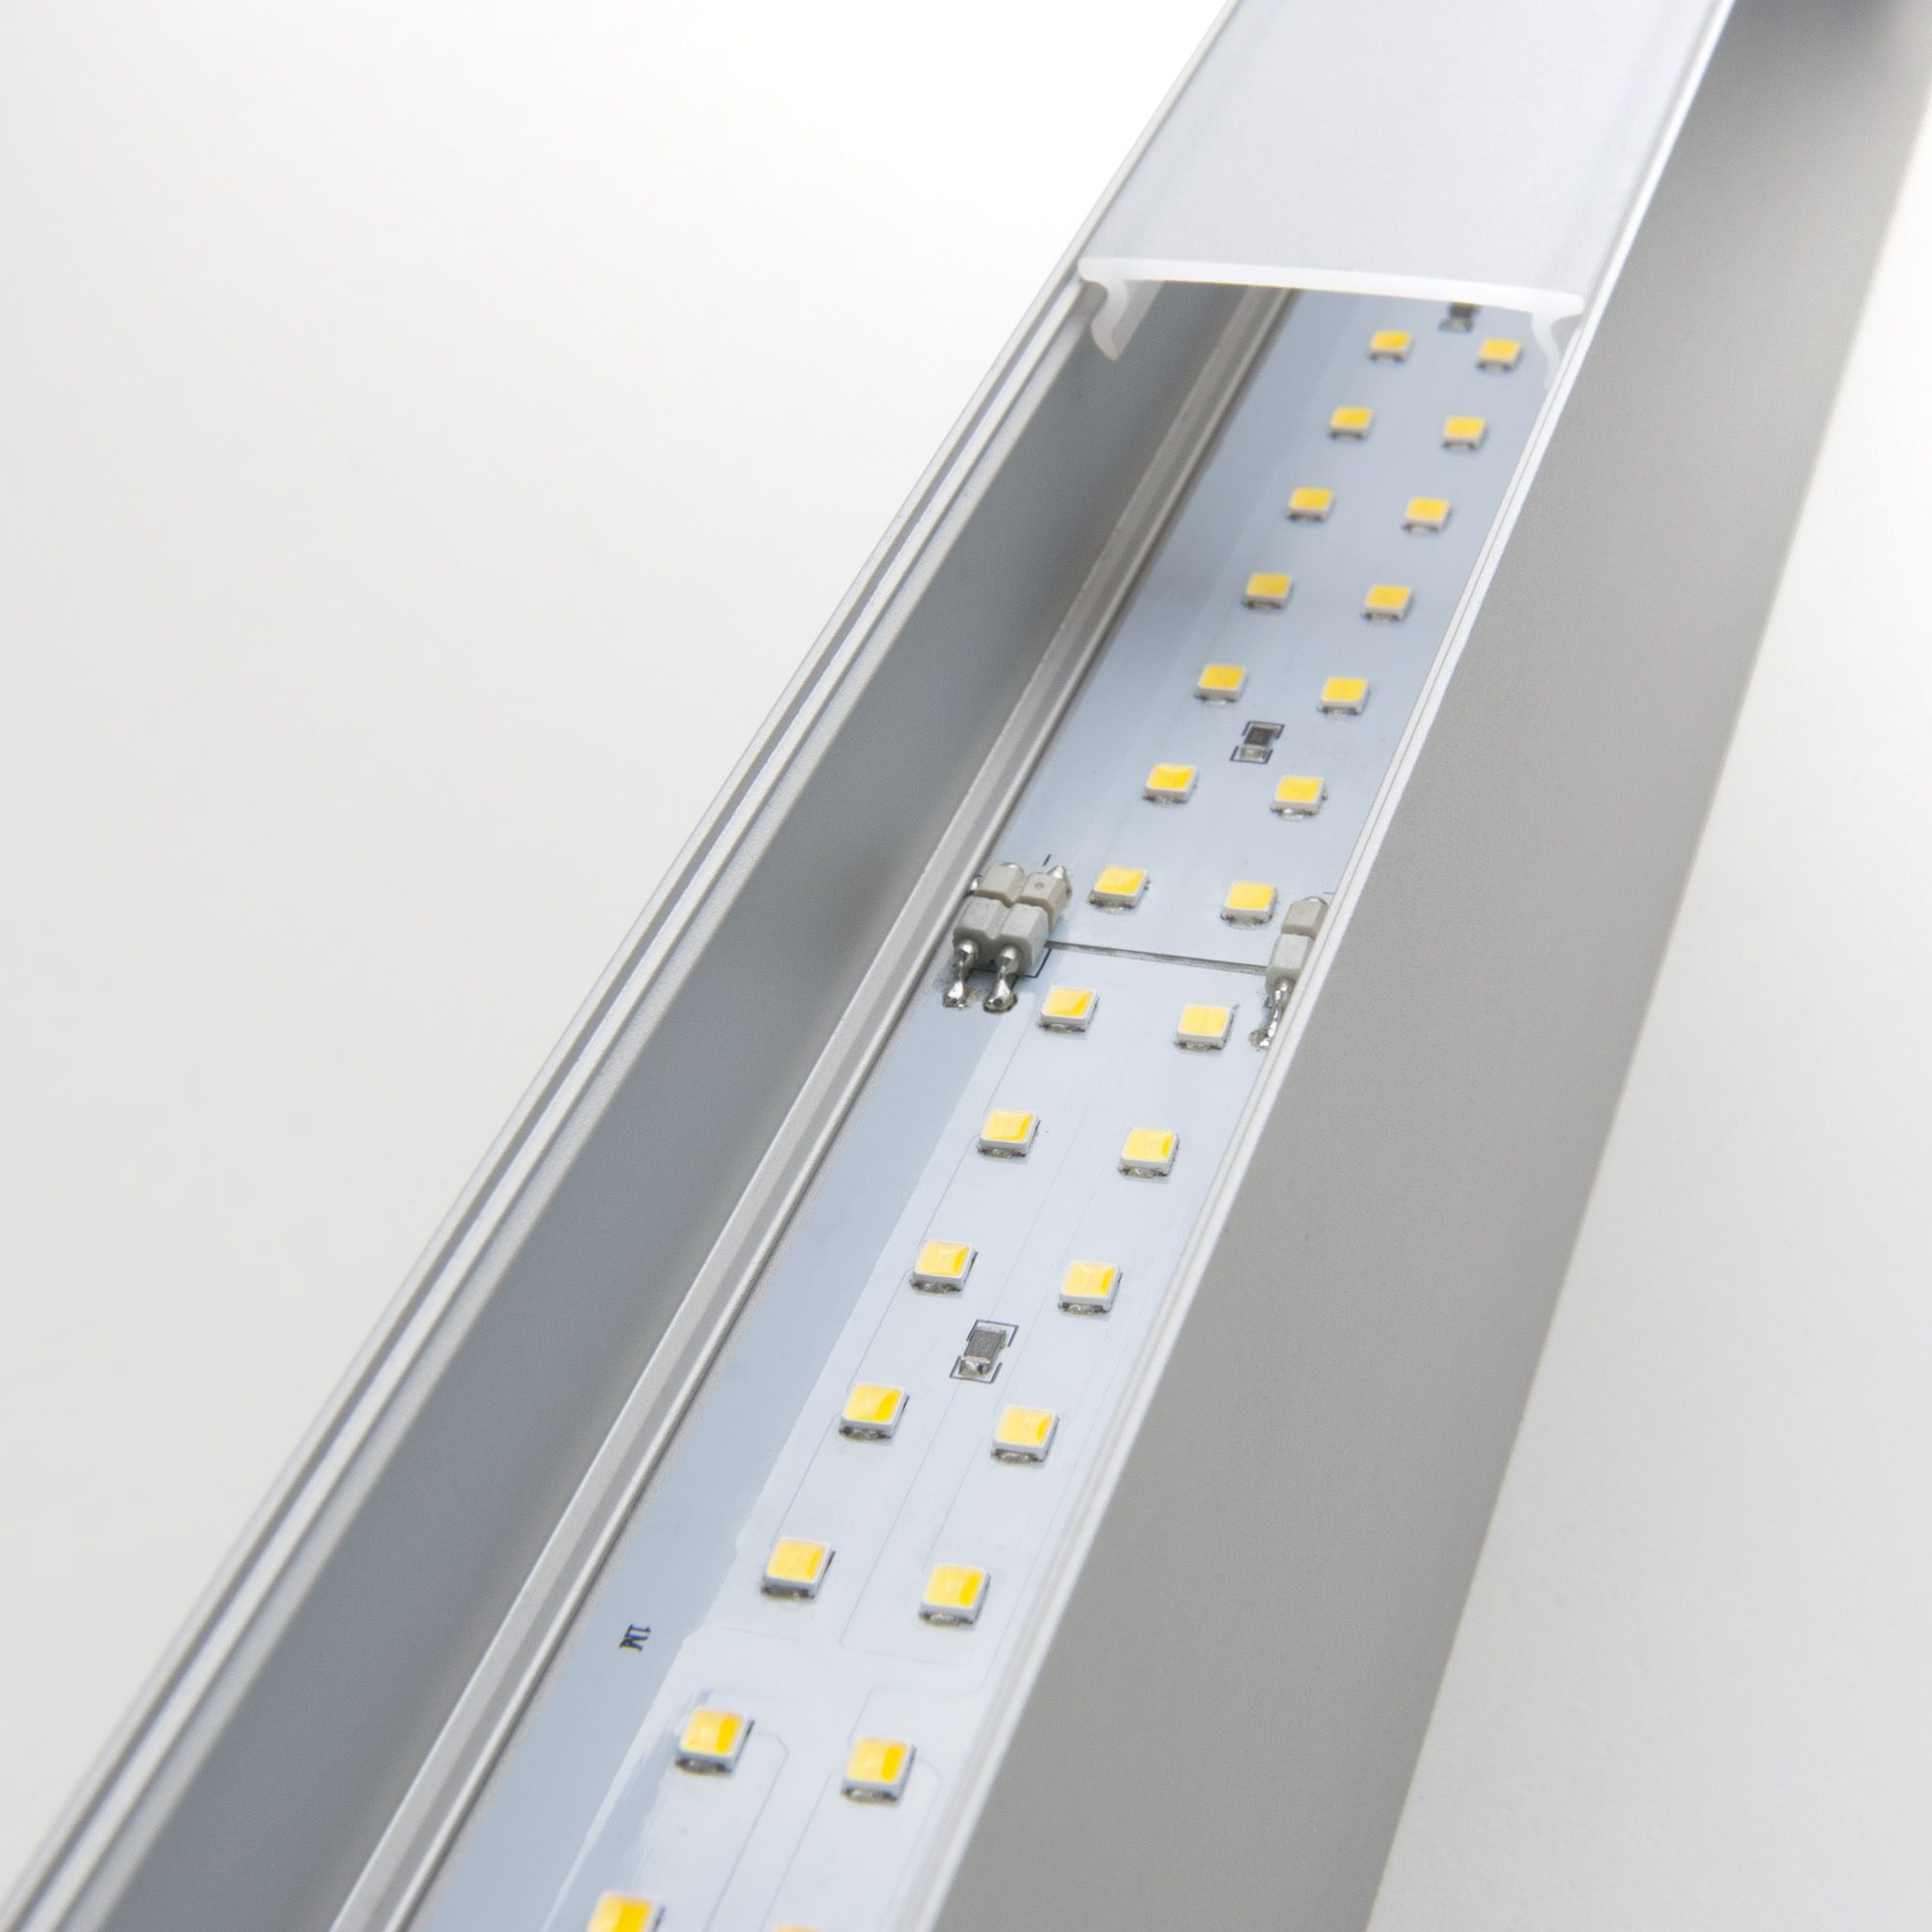 Линейный светодиодный накладной двусторонний светильник 53см 20Вт 4200К матовое серебро 101-100-40-53